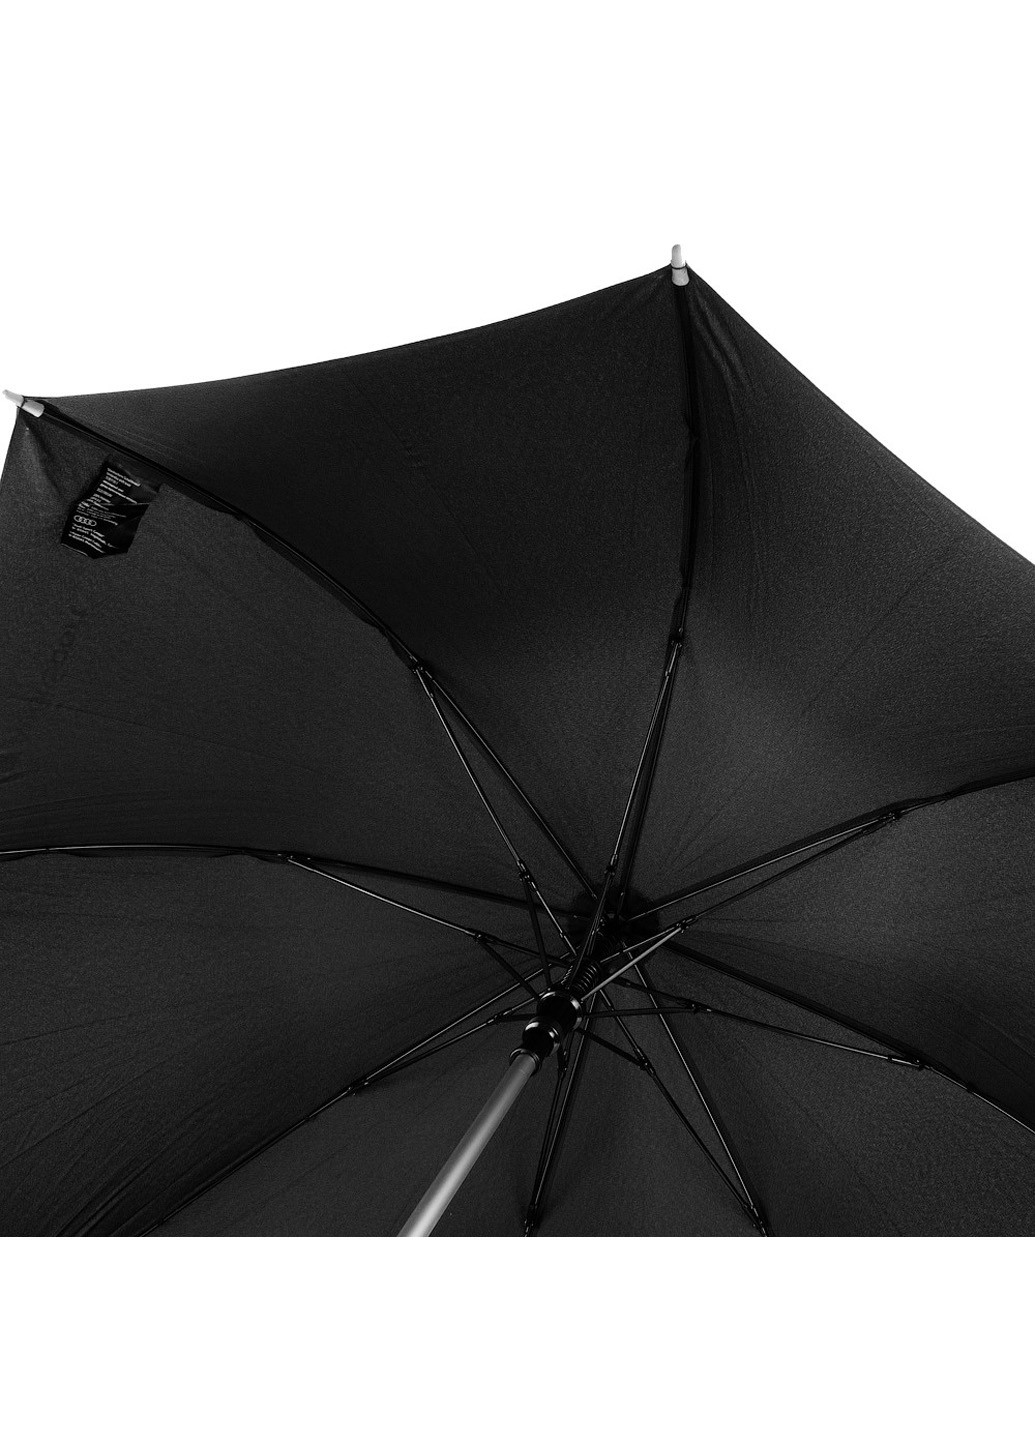 Мужской зонт-трость полуавтомат 98 см Doppler (194317731)